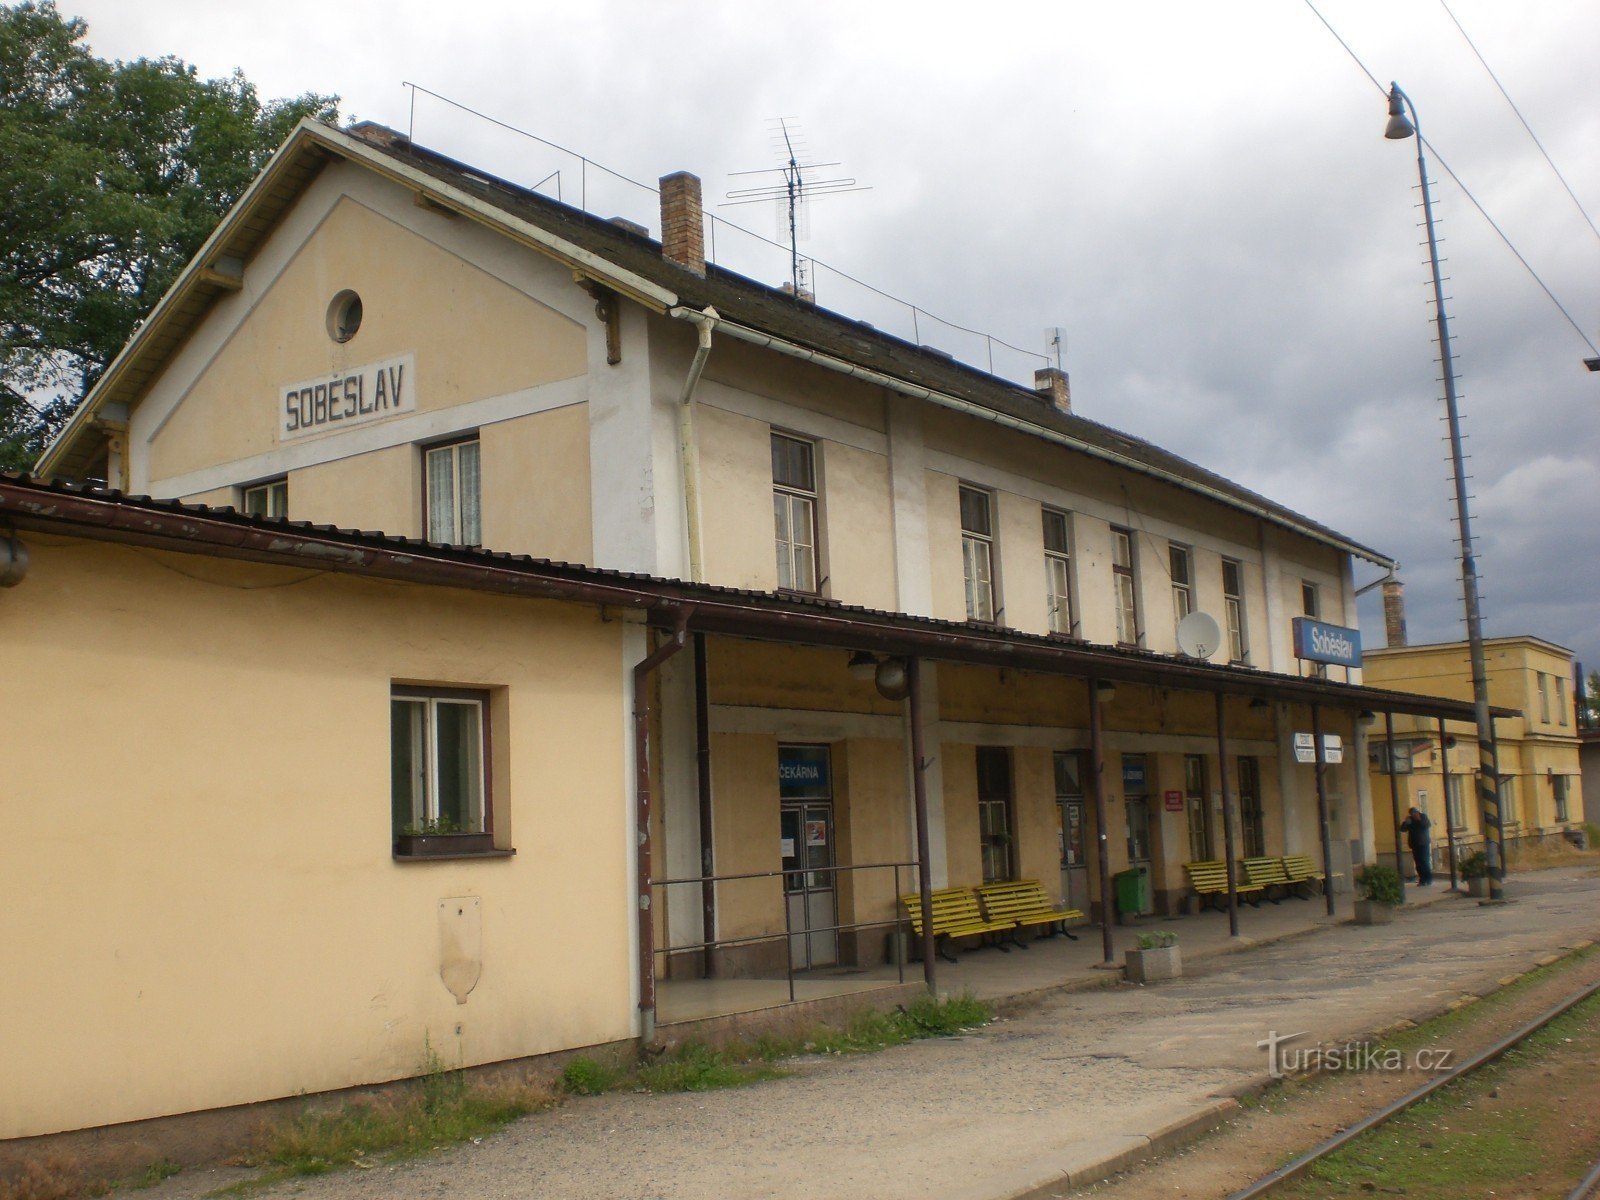 ソベスラフ - 鉄道駅